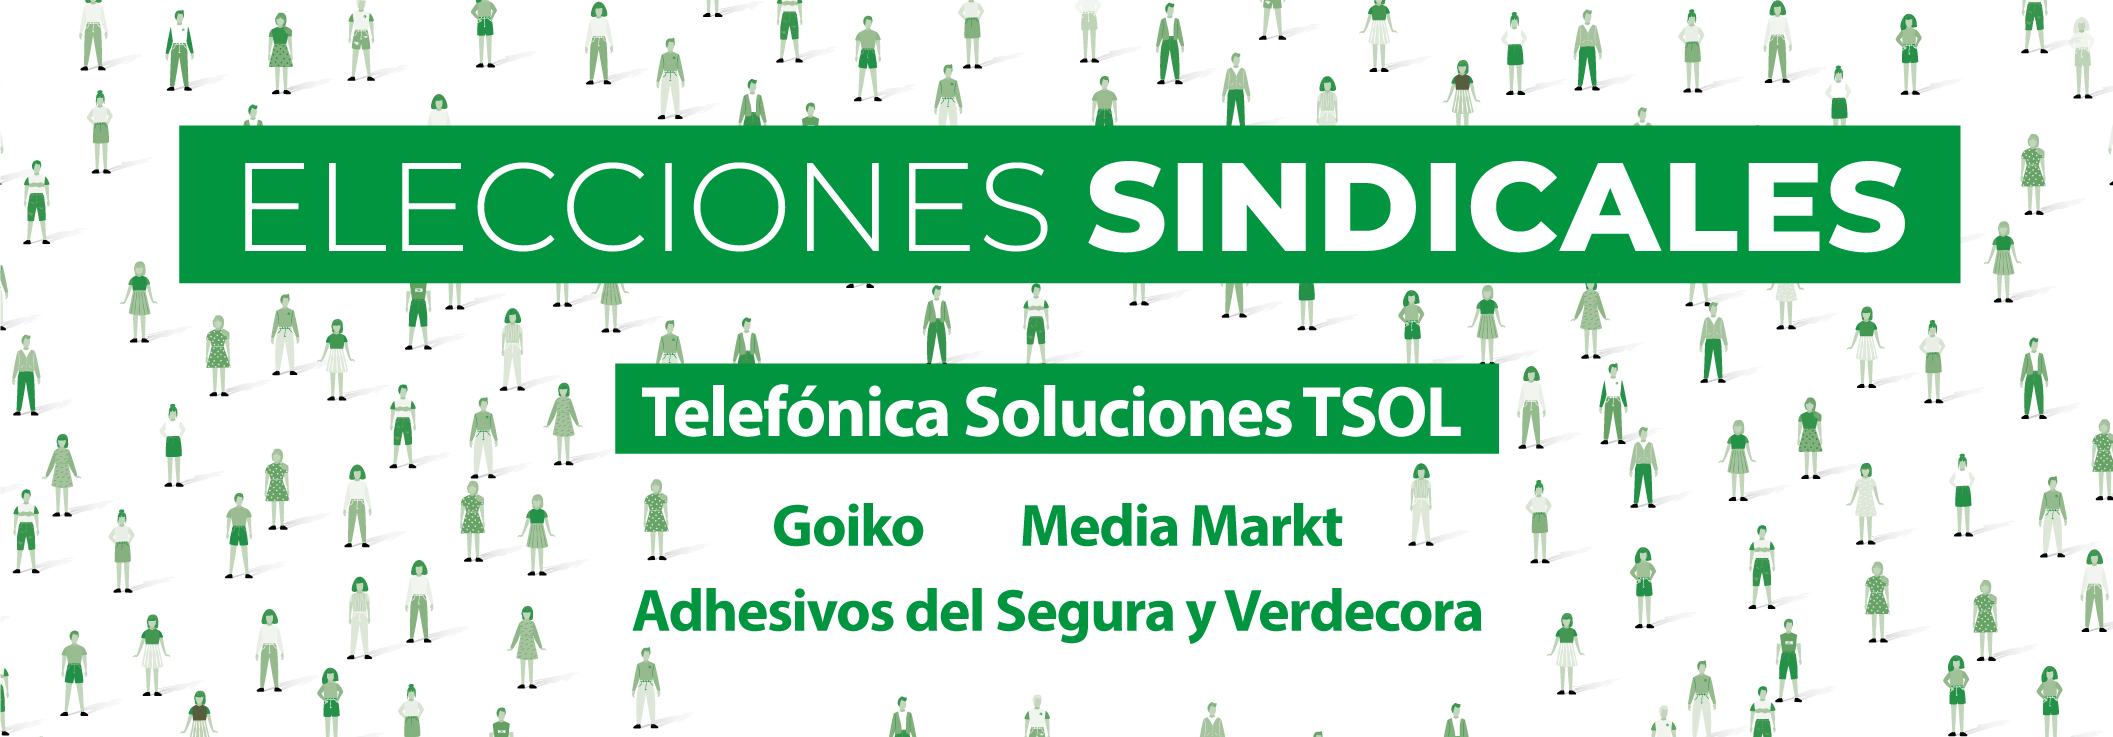 Fetico suma 18 delegados/as en Telefónica Soluciones (TSOL), Goiko, Media Markt, Adhesivos del Segura y Verdecora